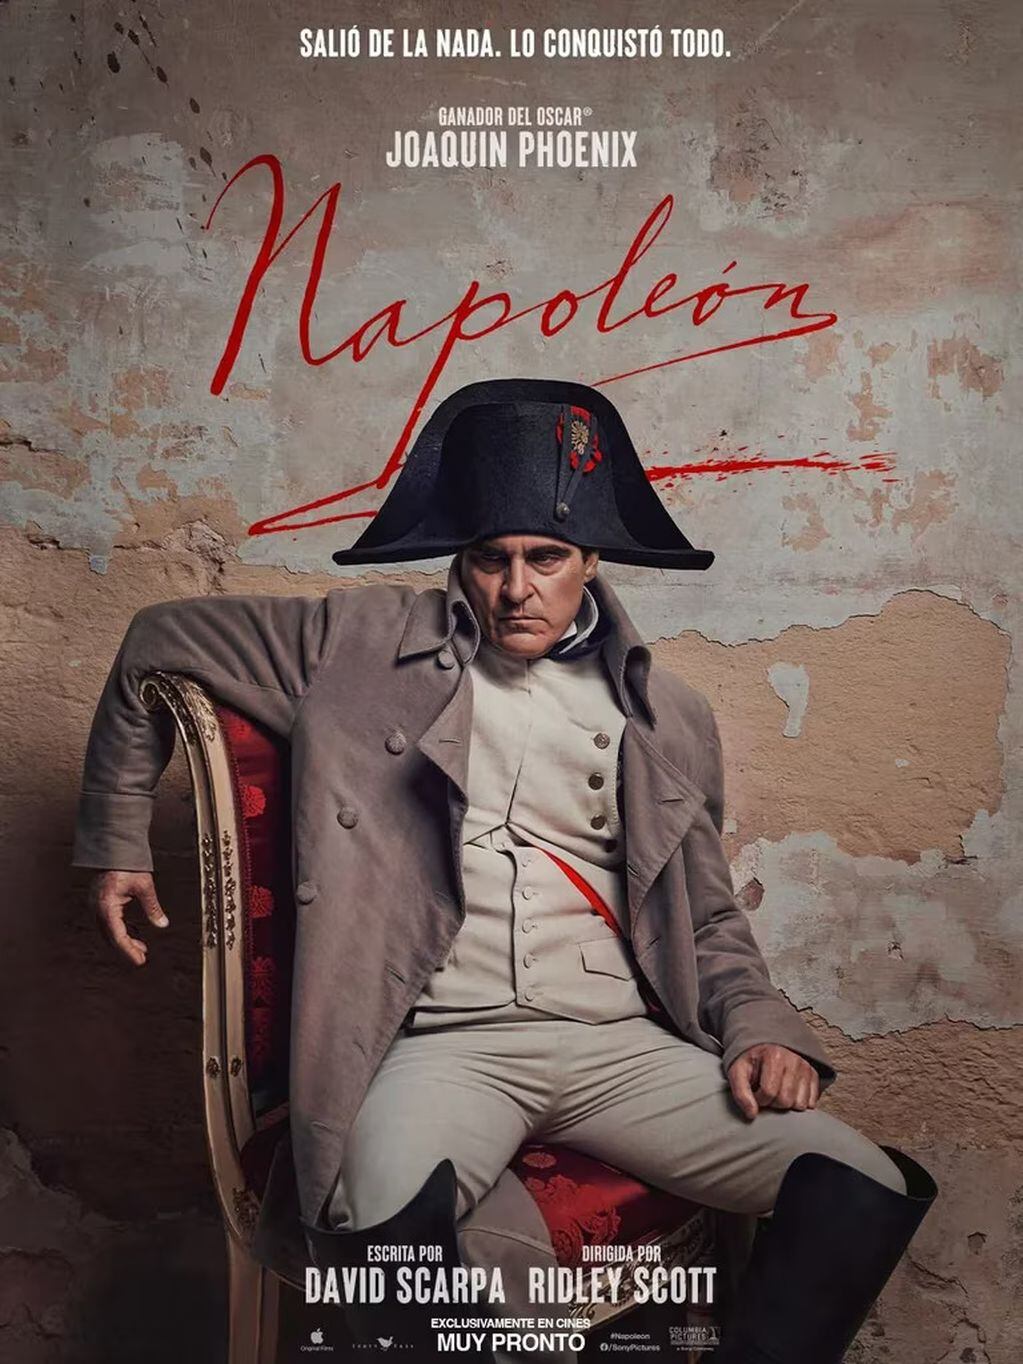 Joaquin Phoenix para "Napoléon".